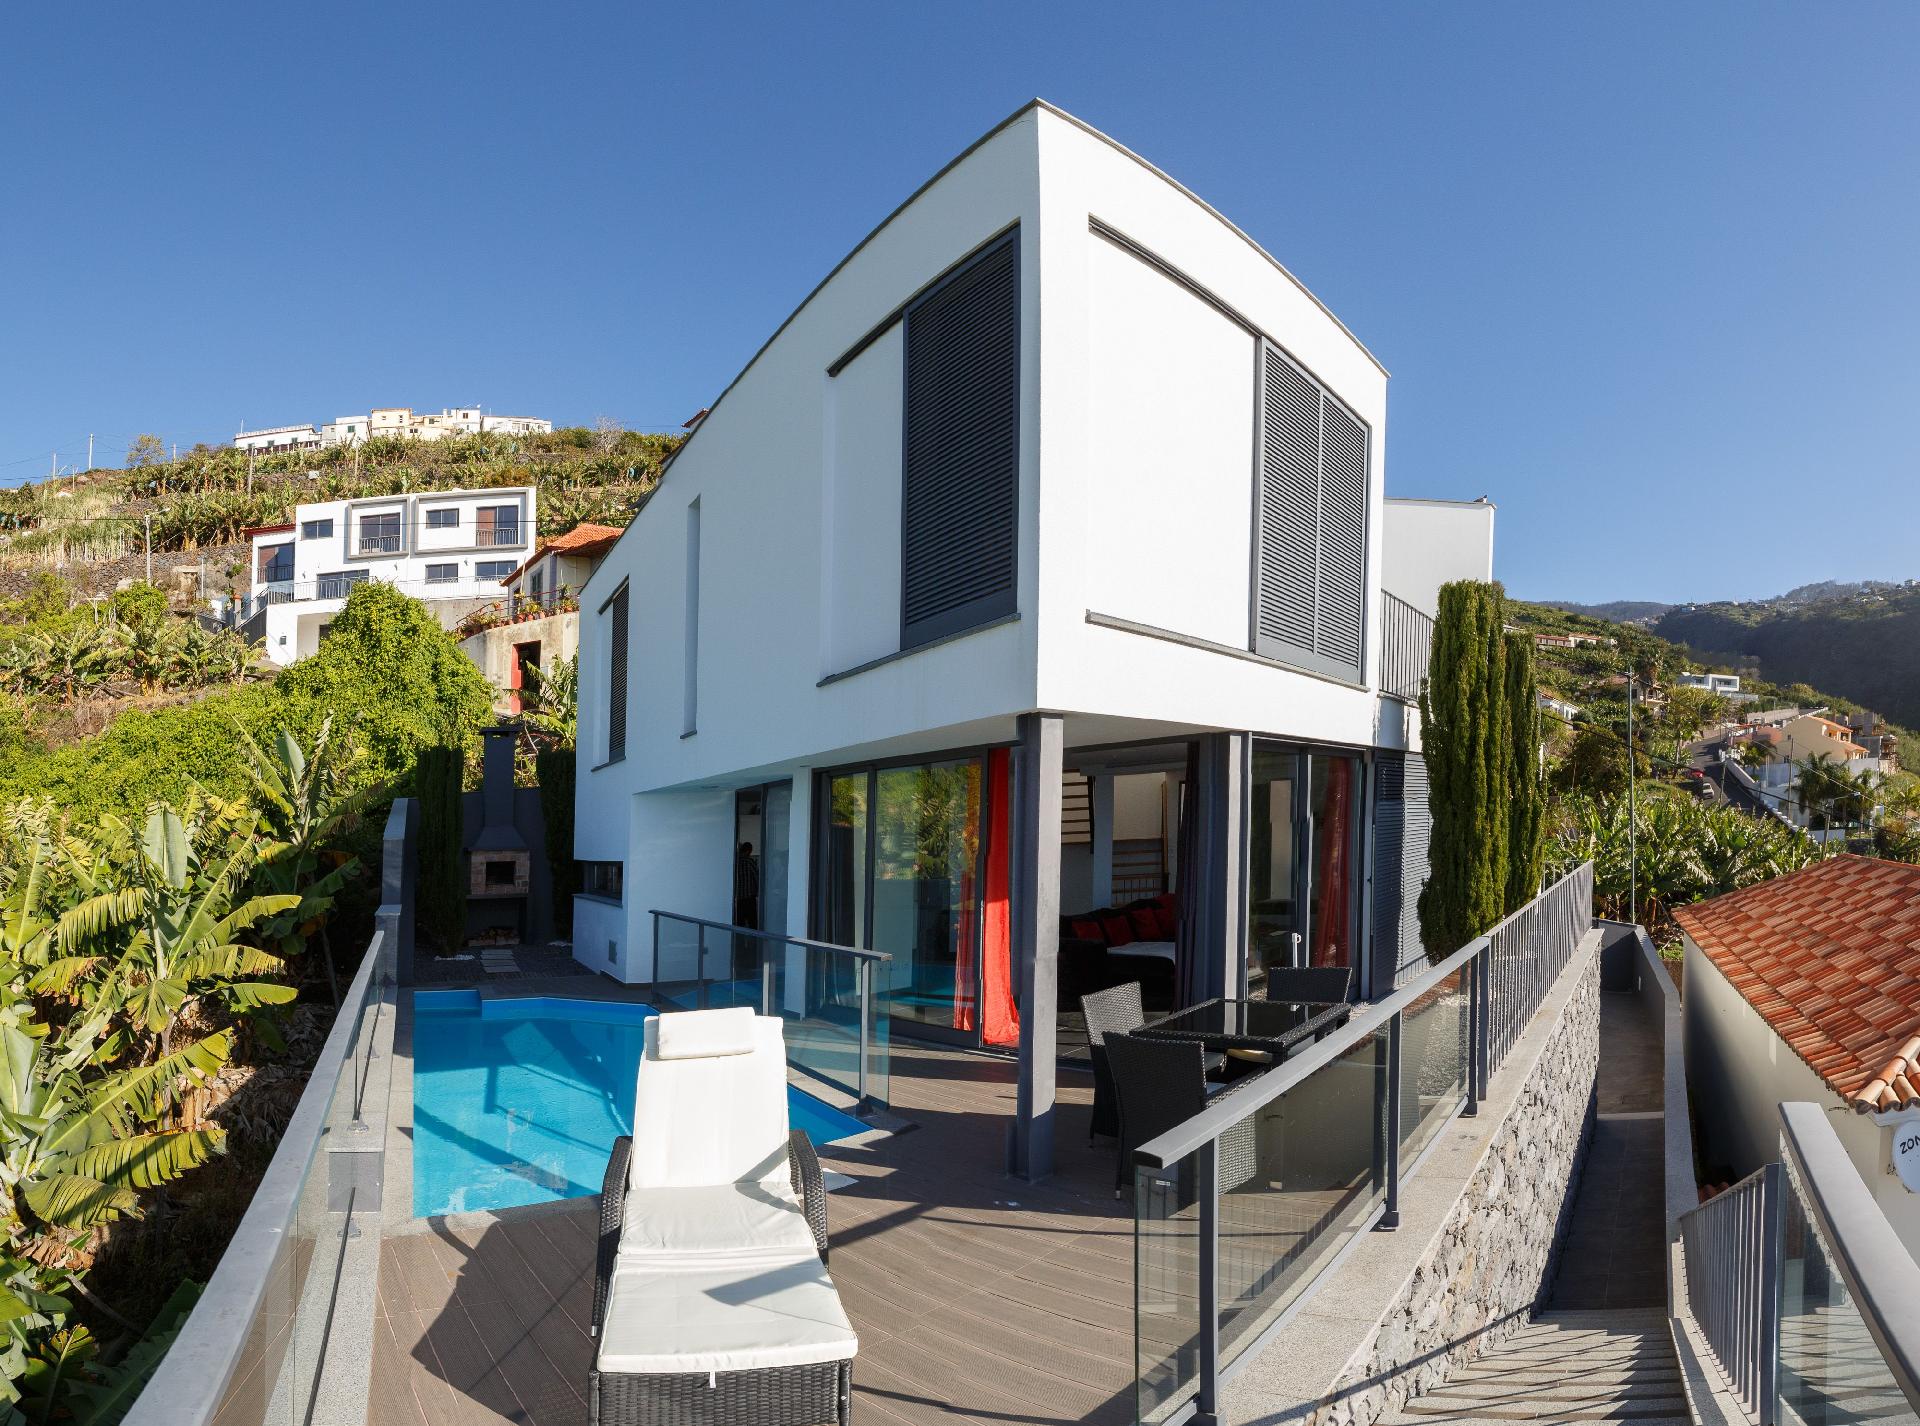 Ferienhaus mit Privatpool für 4 Personen  + 2 Ferienhaus in Portugal